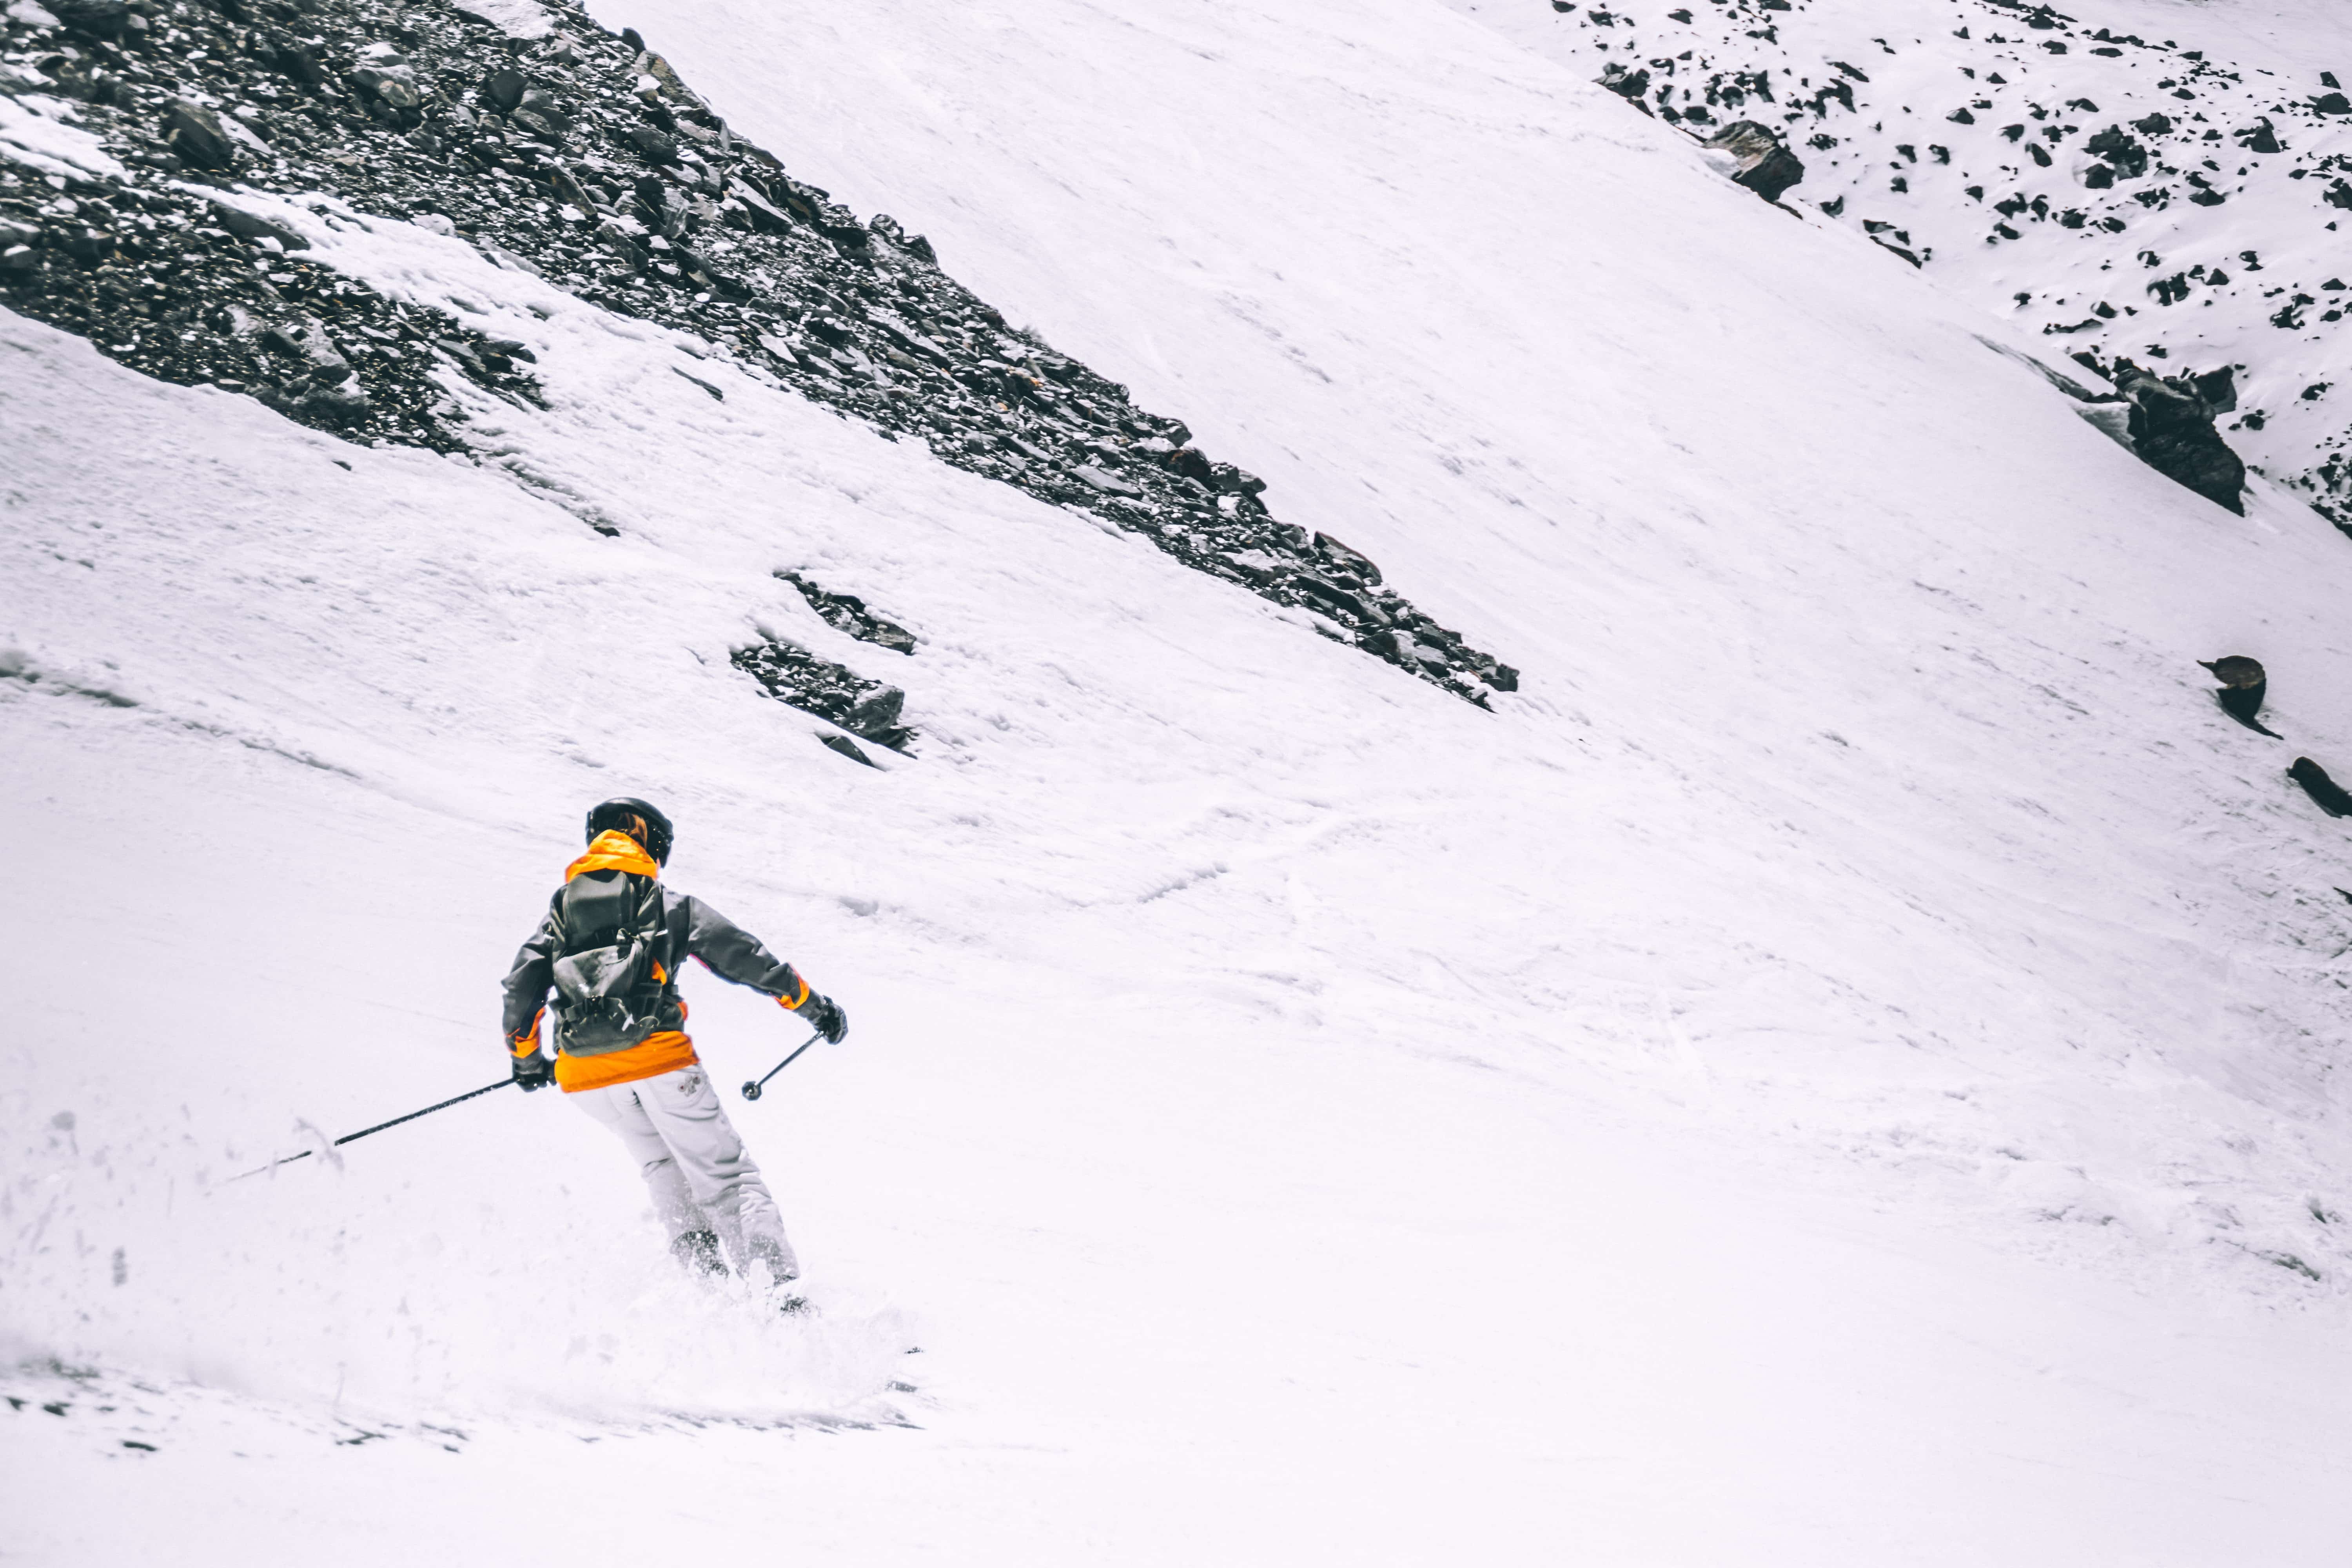 Skier wearing orange on mountain